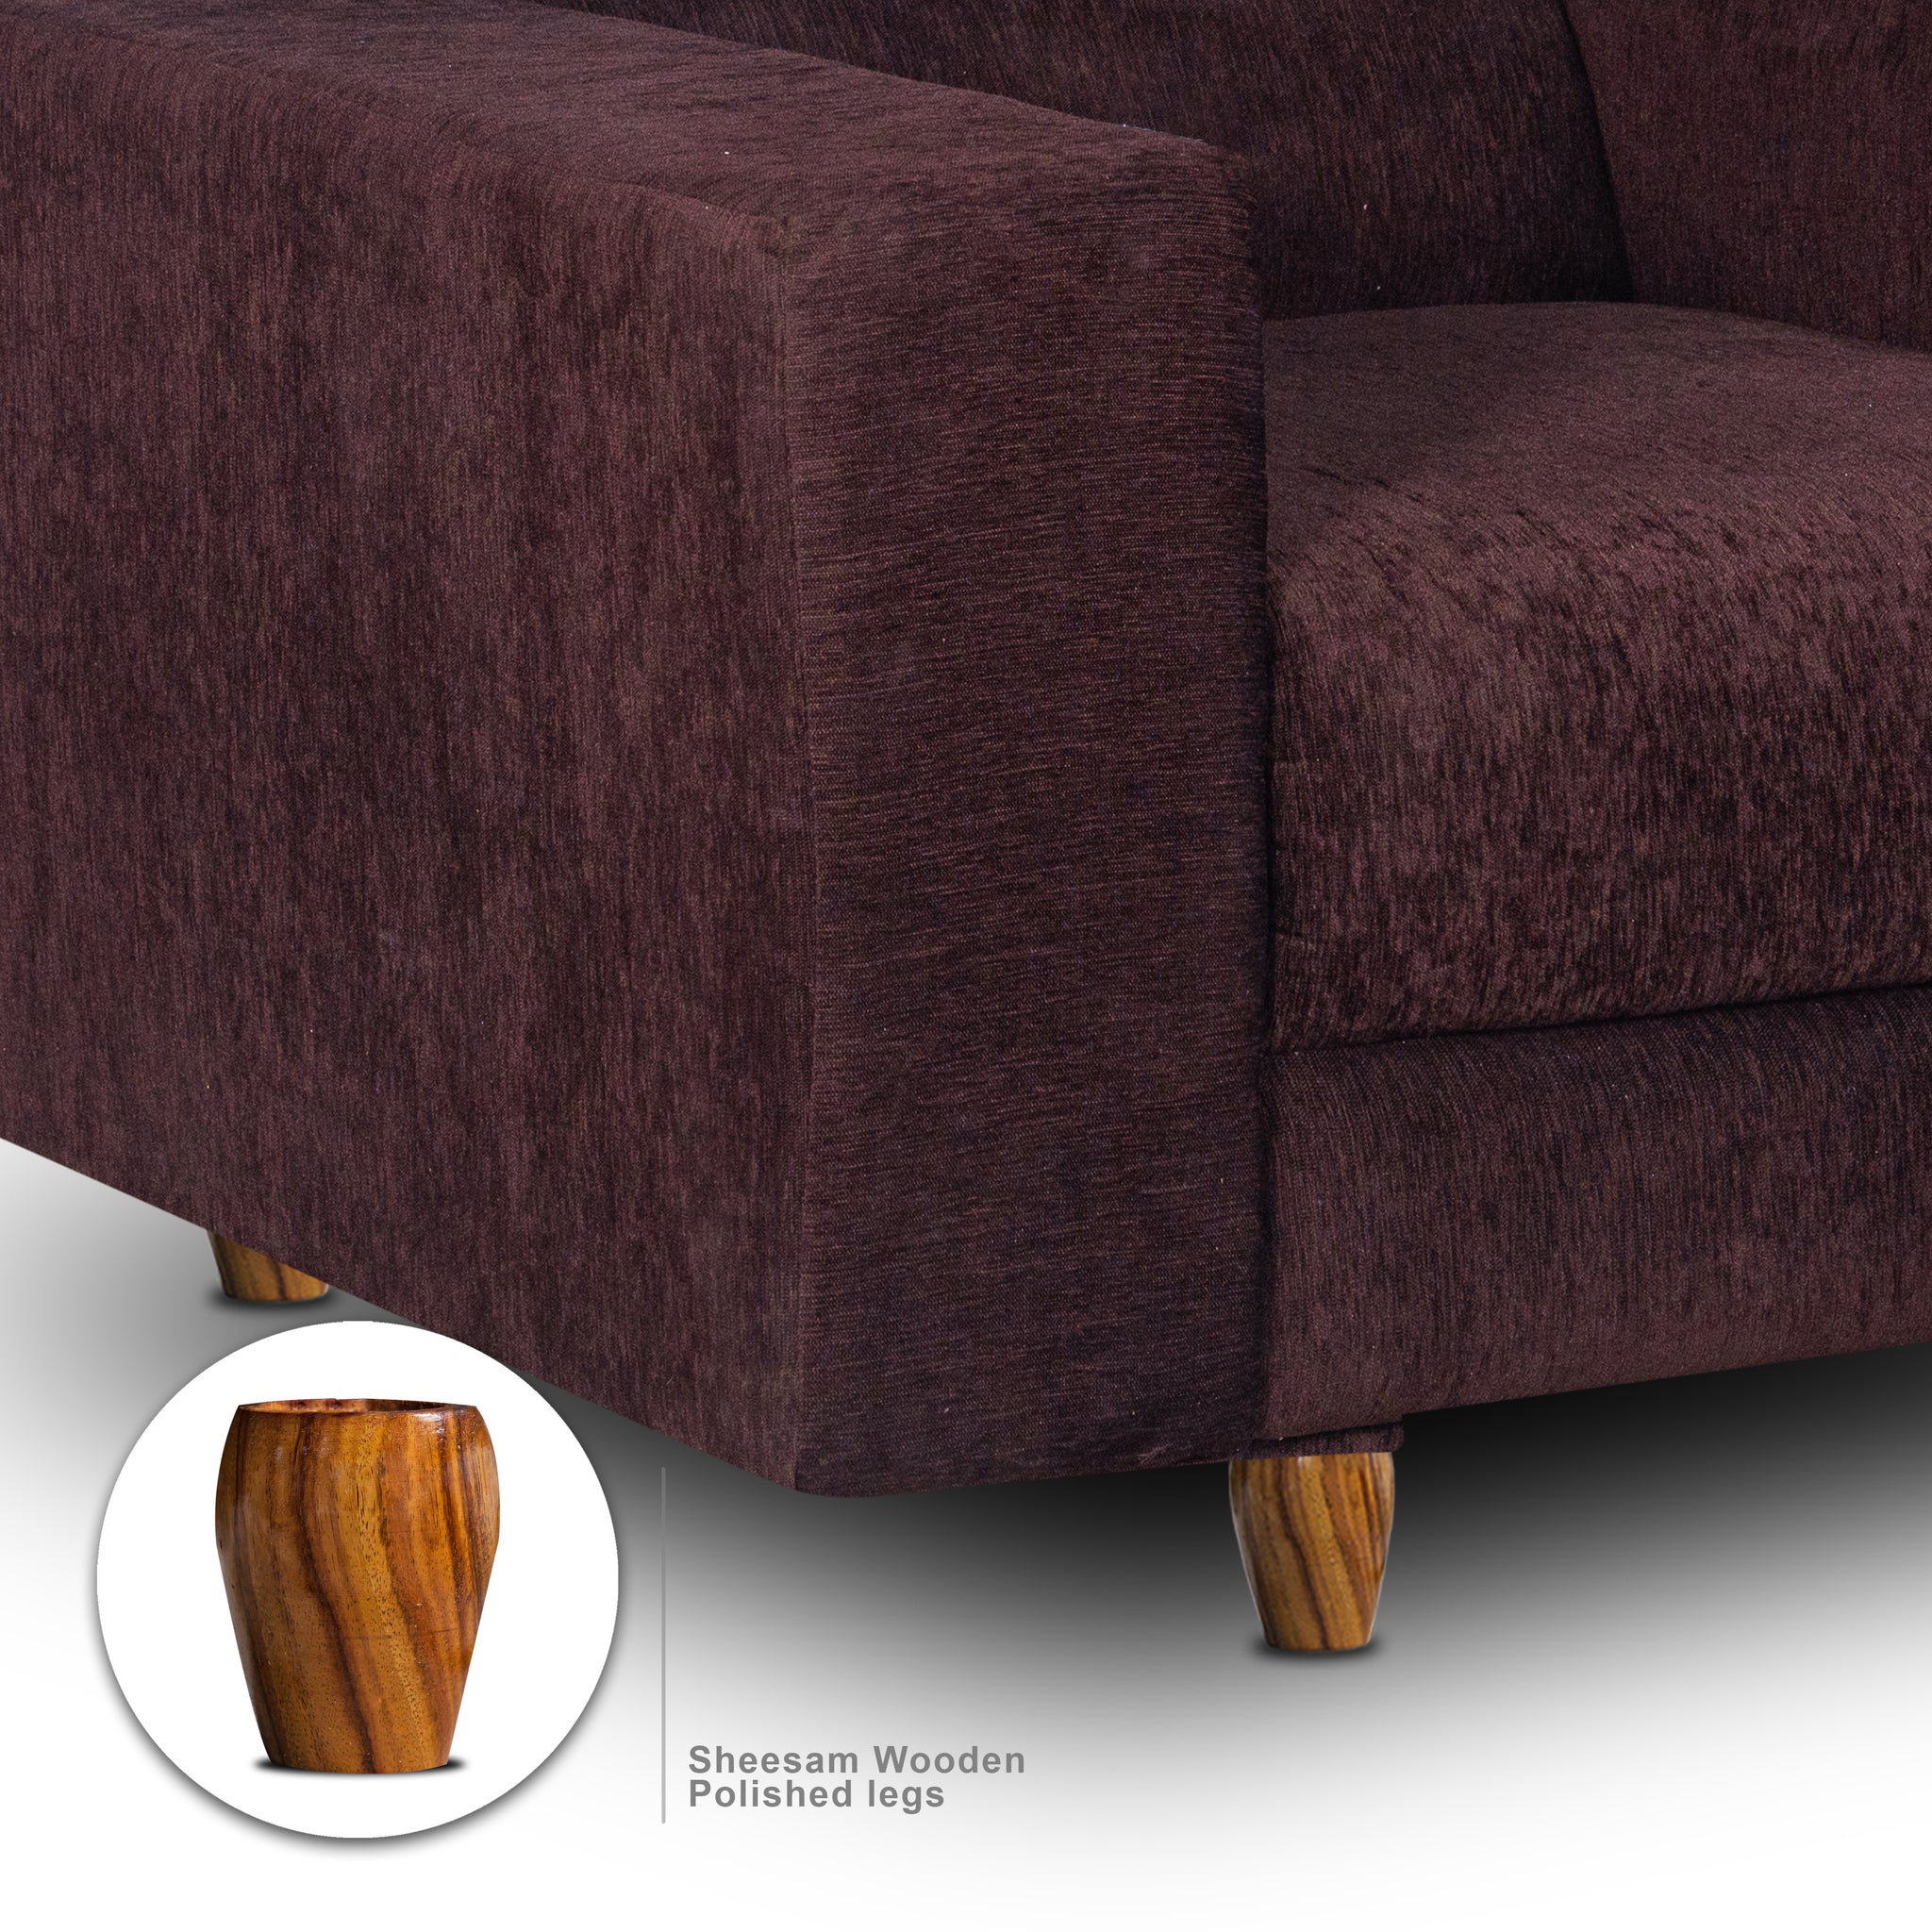 Berlin 1 Seater Sofa, Chenille Molfino Fabric (Finish Color - Brown)